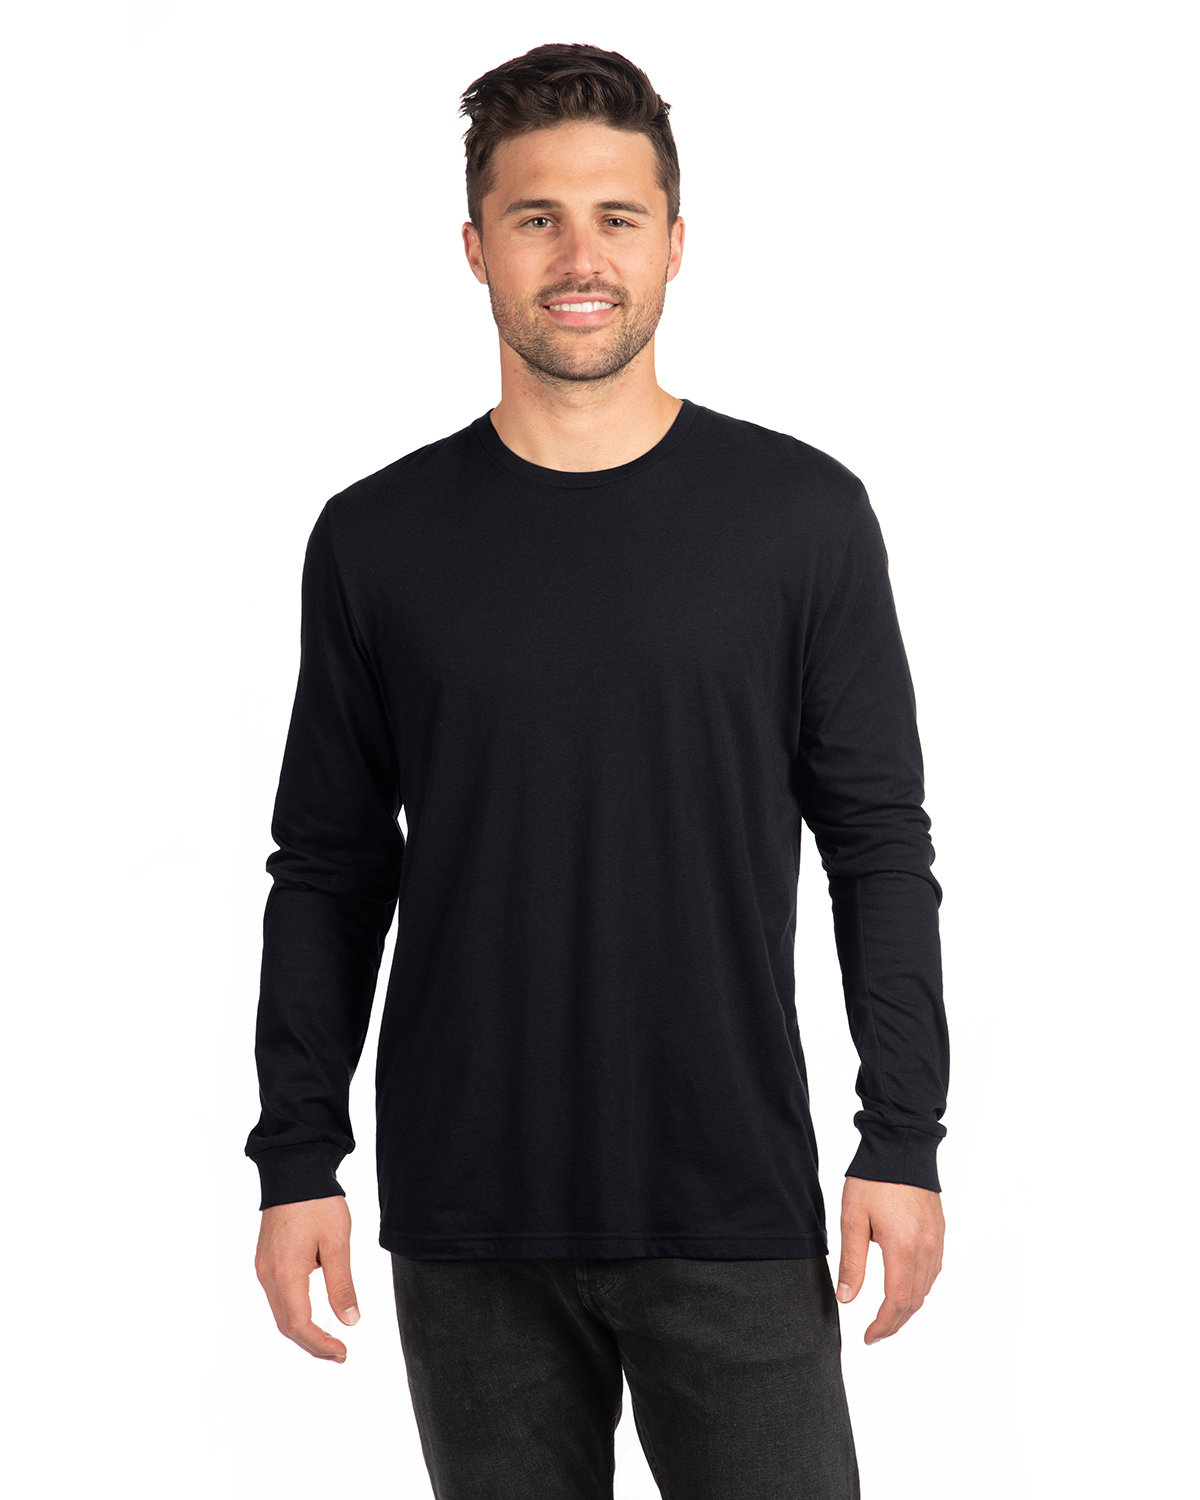 Next Level Apparel Unisex CVC Long-Sleeve T-Shirt | alphabroder Canada